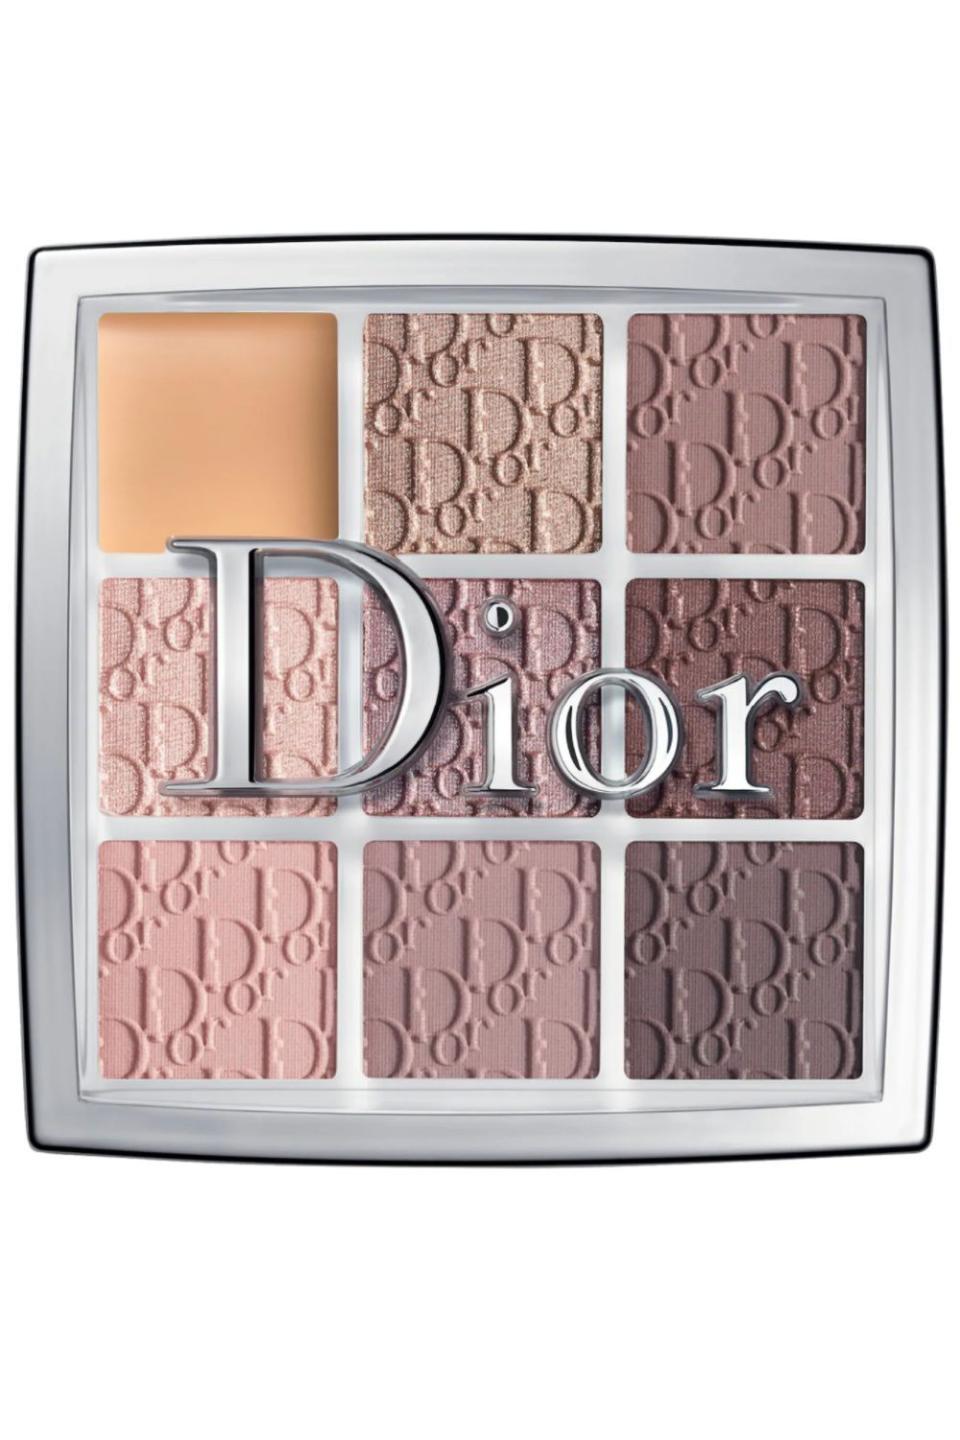 1) Dior Backstage Eyeshadow Palette